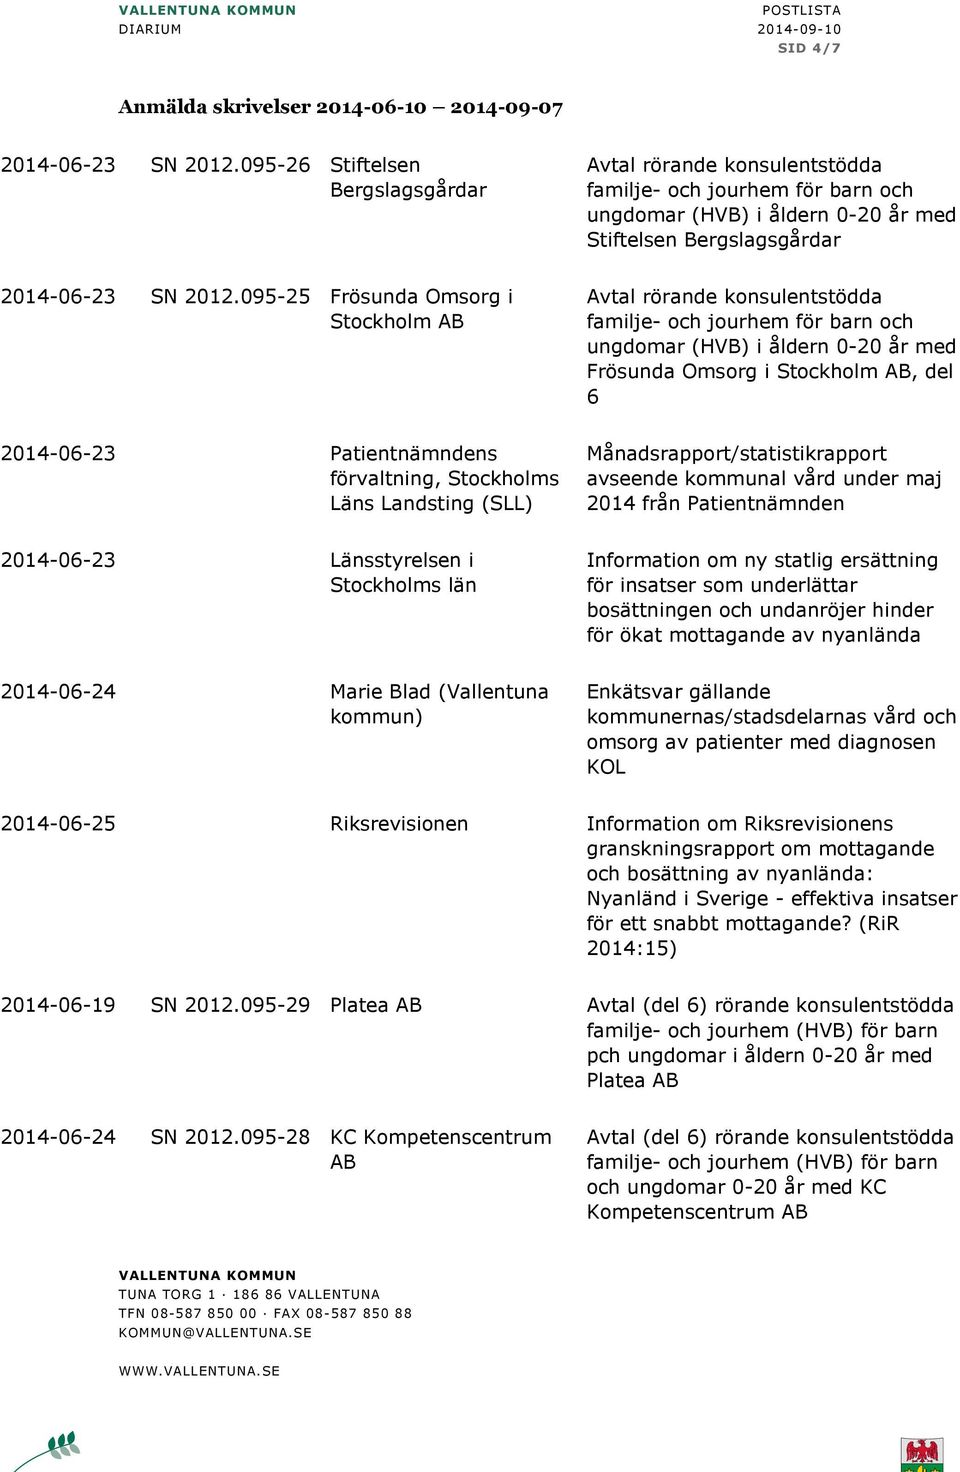 Läns Landsting (SLL) Månadsrapport/statistikrapport avseende kommunal vård under maj 2014 från Patientnämnden 2014-06-23 Länsstyrelsen i Stockholms län Information om ny statlig ersättning för